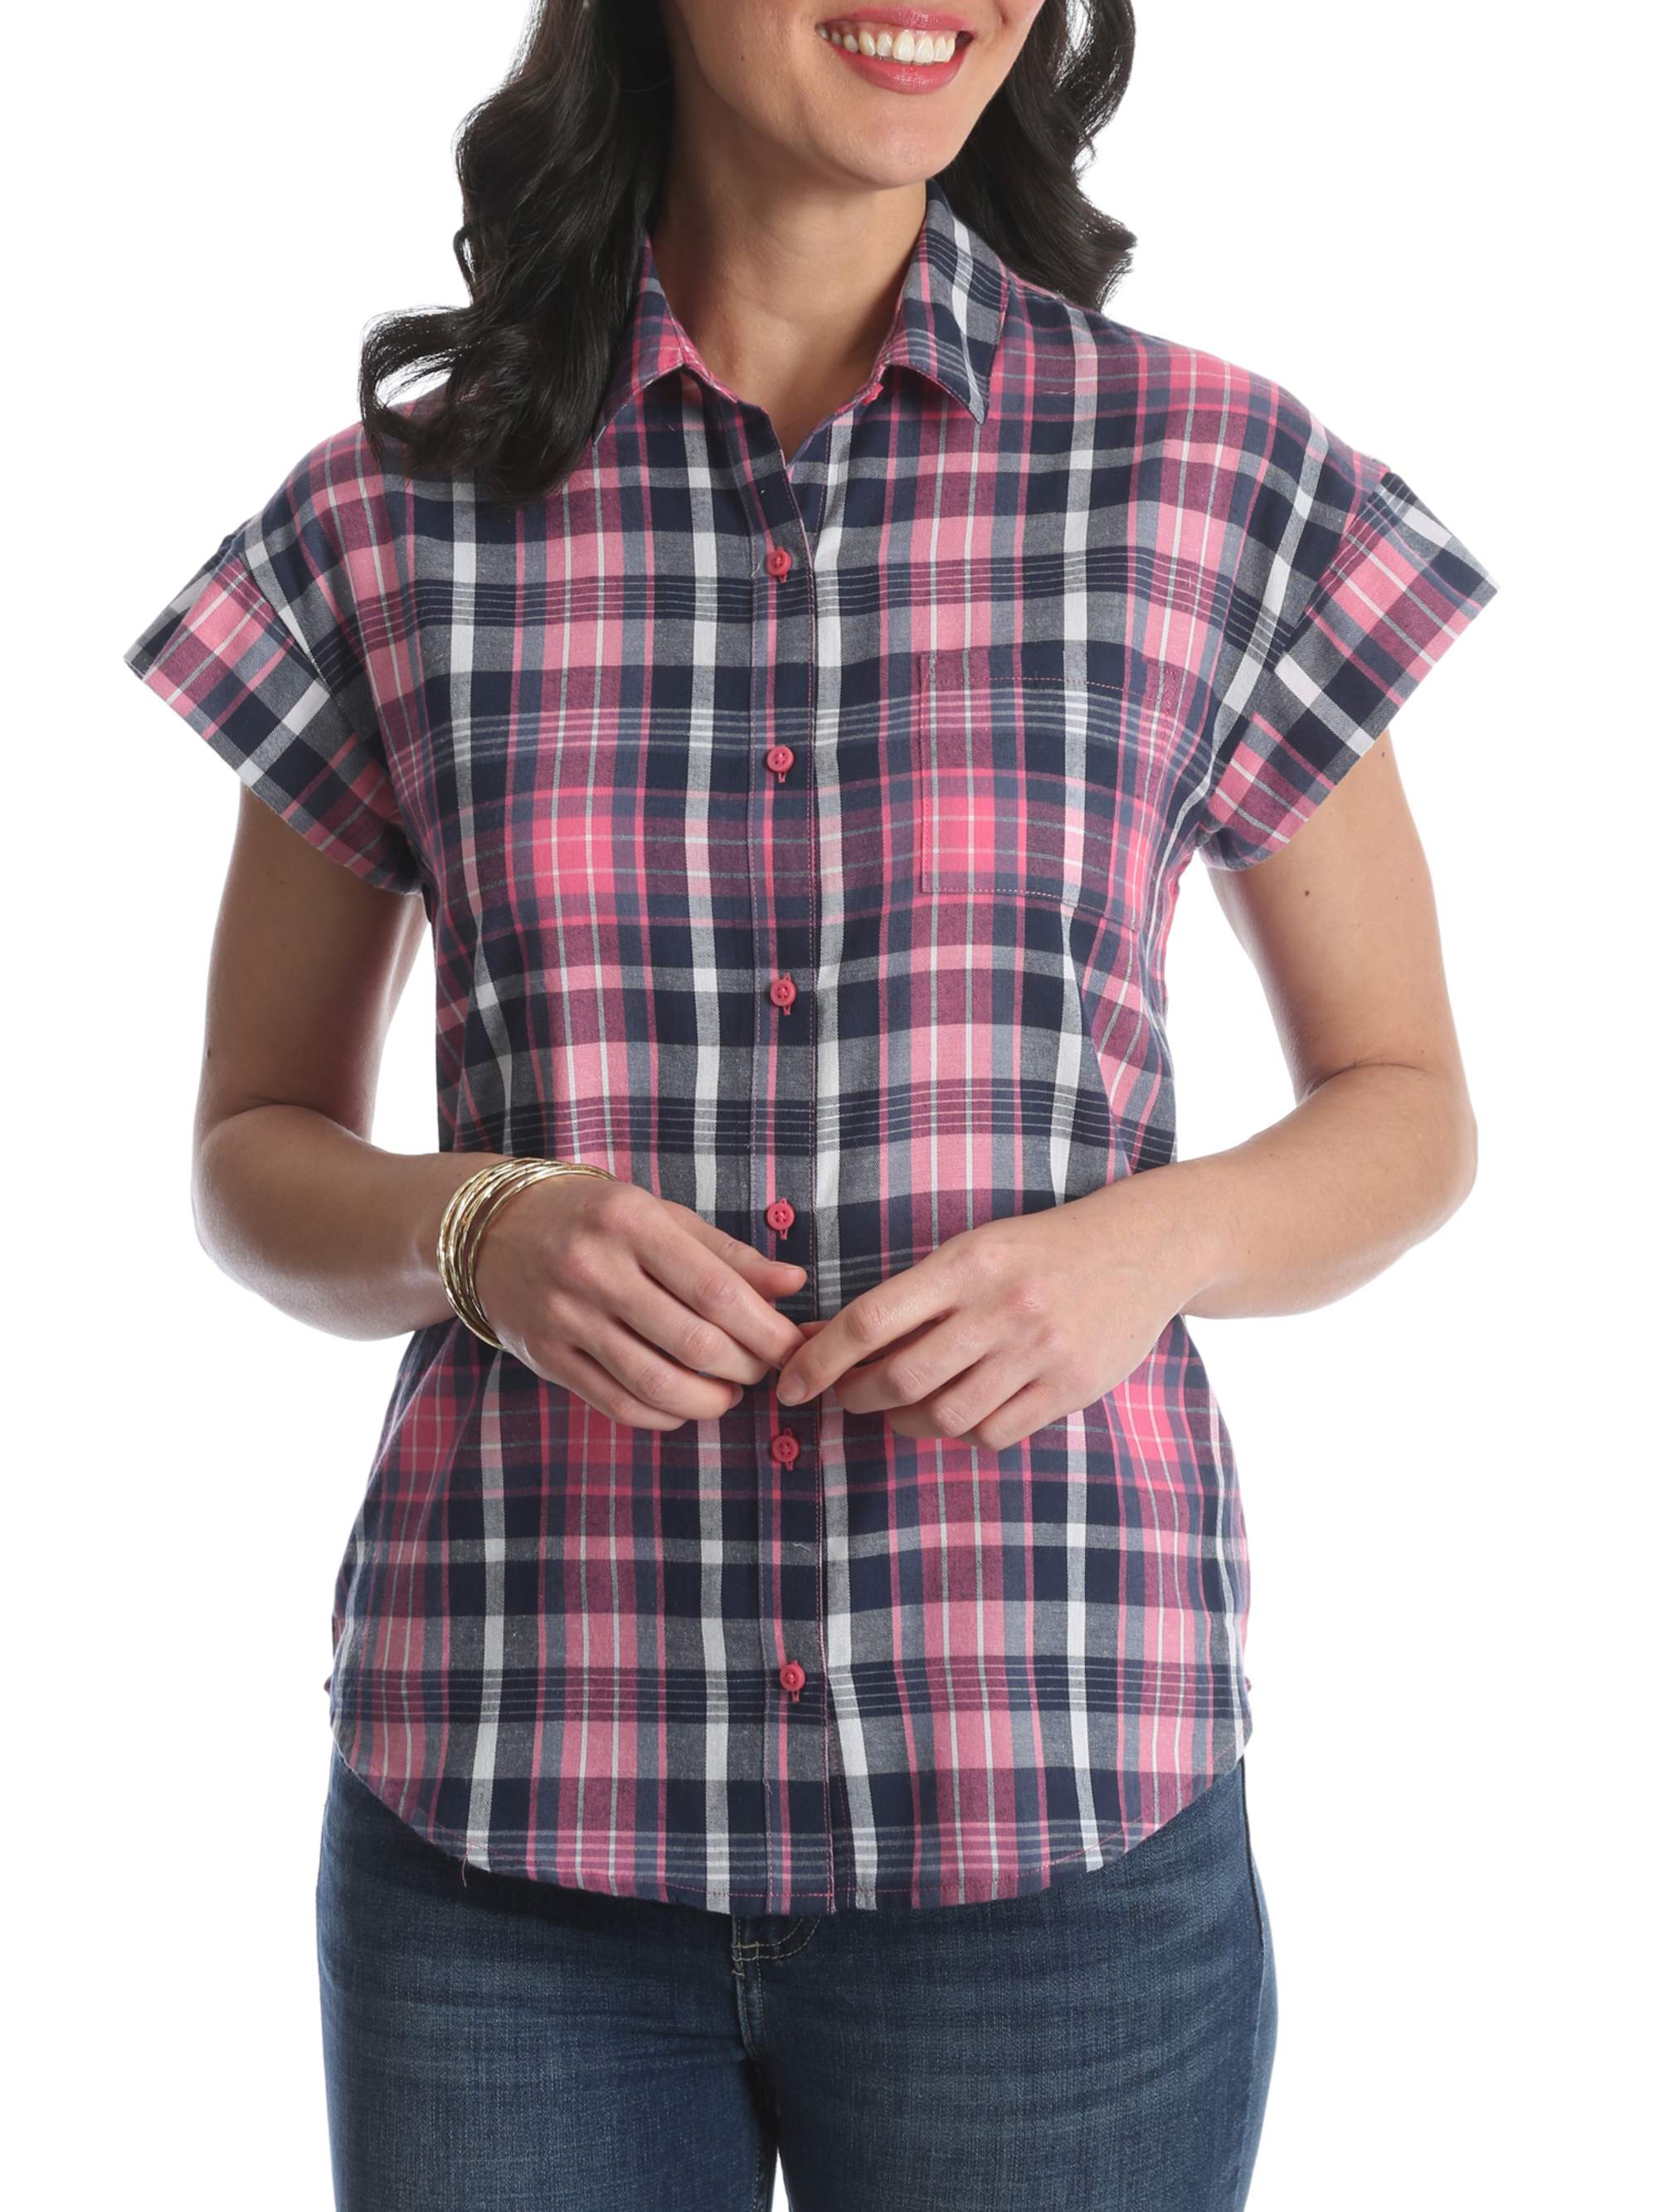 Lee Riders - Women's Short Sleeve Woven Shirt - Walmart.com - Walmart.com